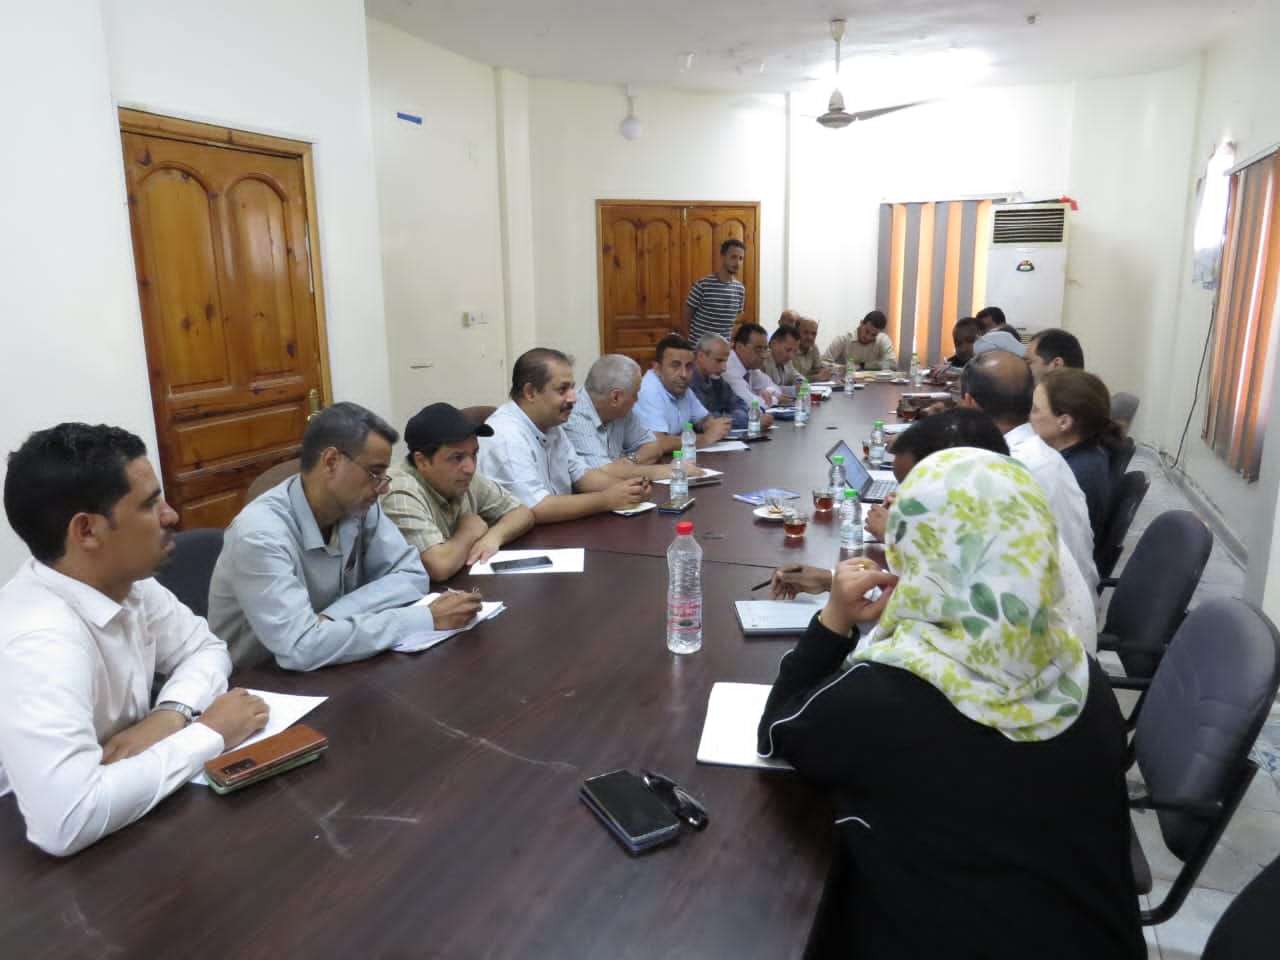 لجنة طوارئ الصحة تعقد اجتماعاً لها - اليمن 